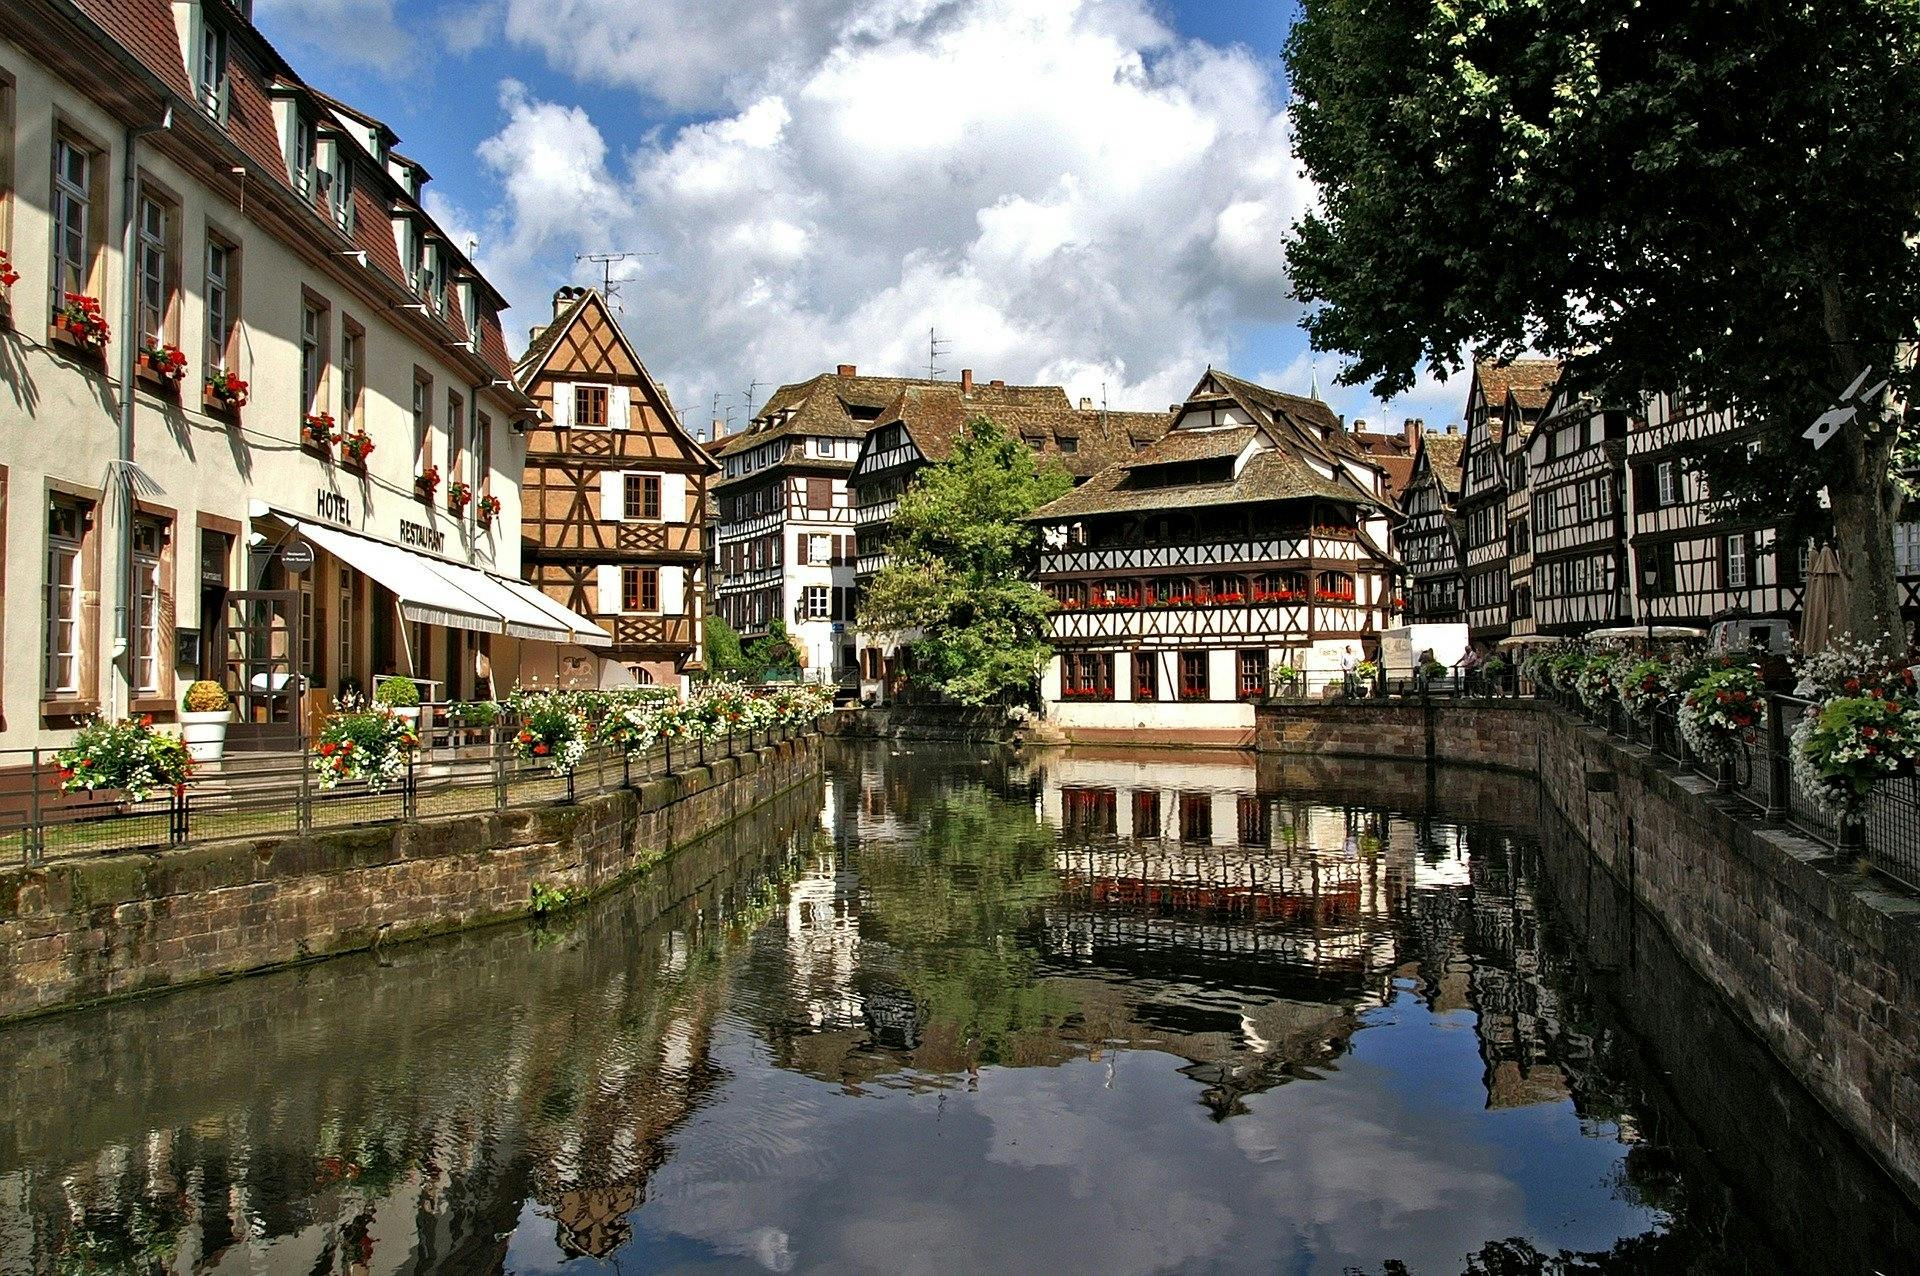 Découvrez les endroits les plus photogéniques de Strasbourg avec un local